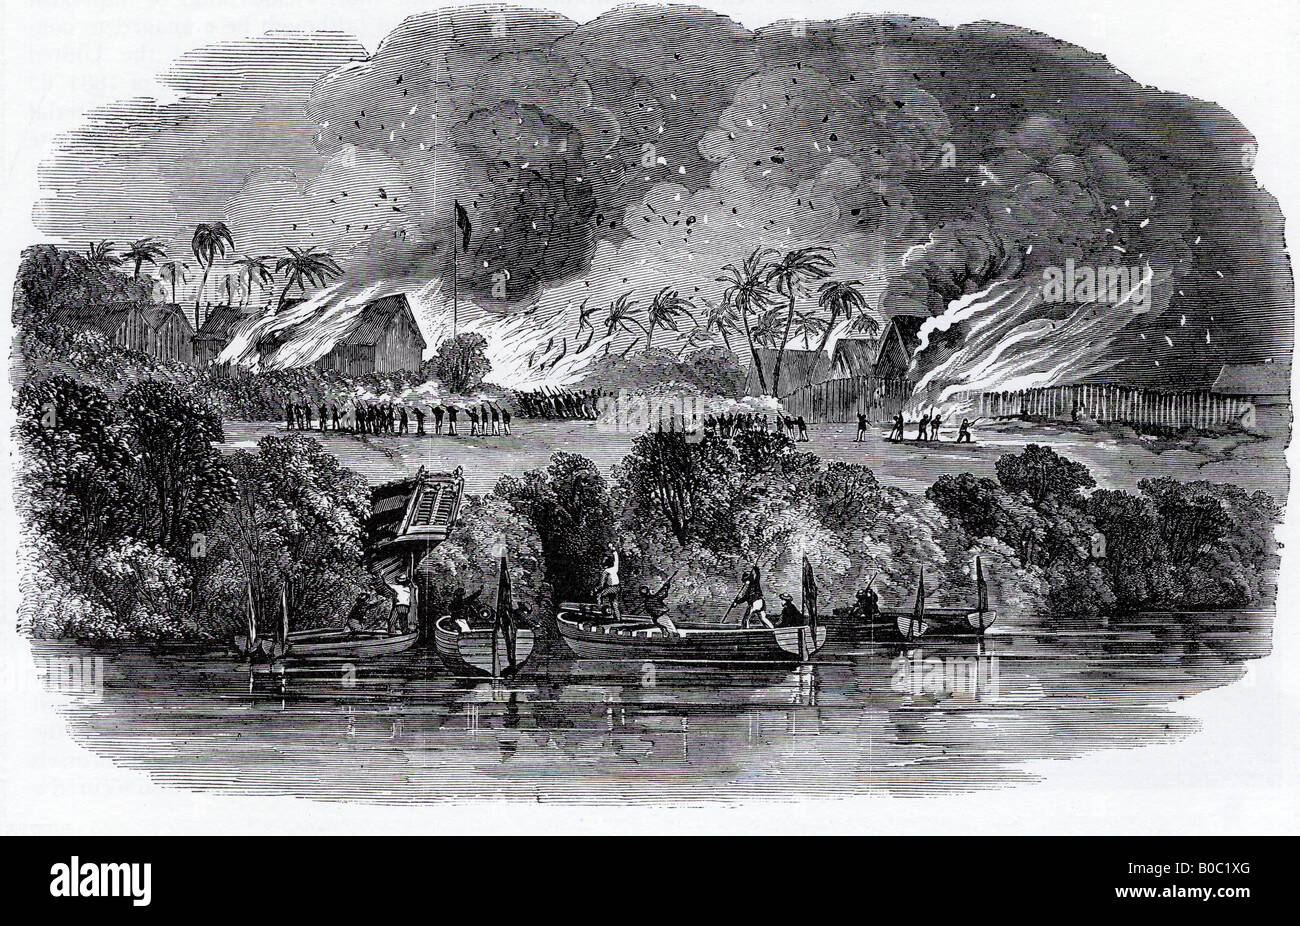 Sklaverei eine britische Marine Landung Partei Angriff einen Sklavenhandel Basis an der Küste von Mosambik im Jahr 1851 Stockfoto